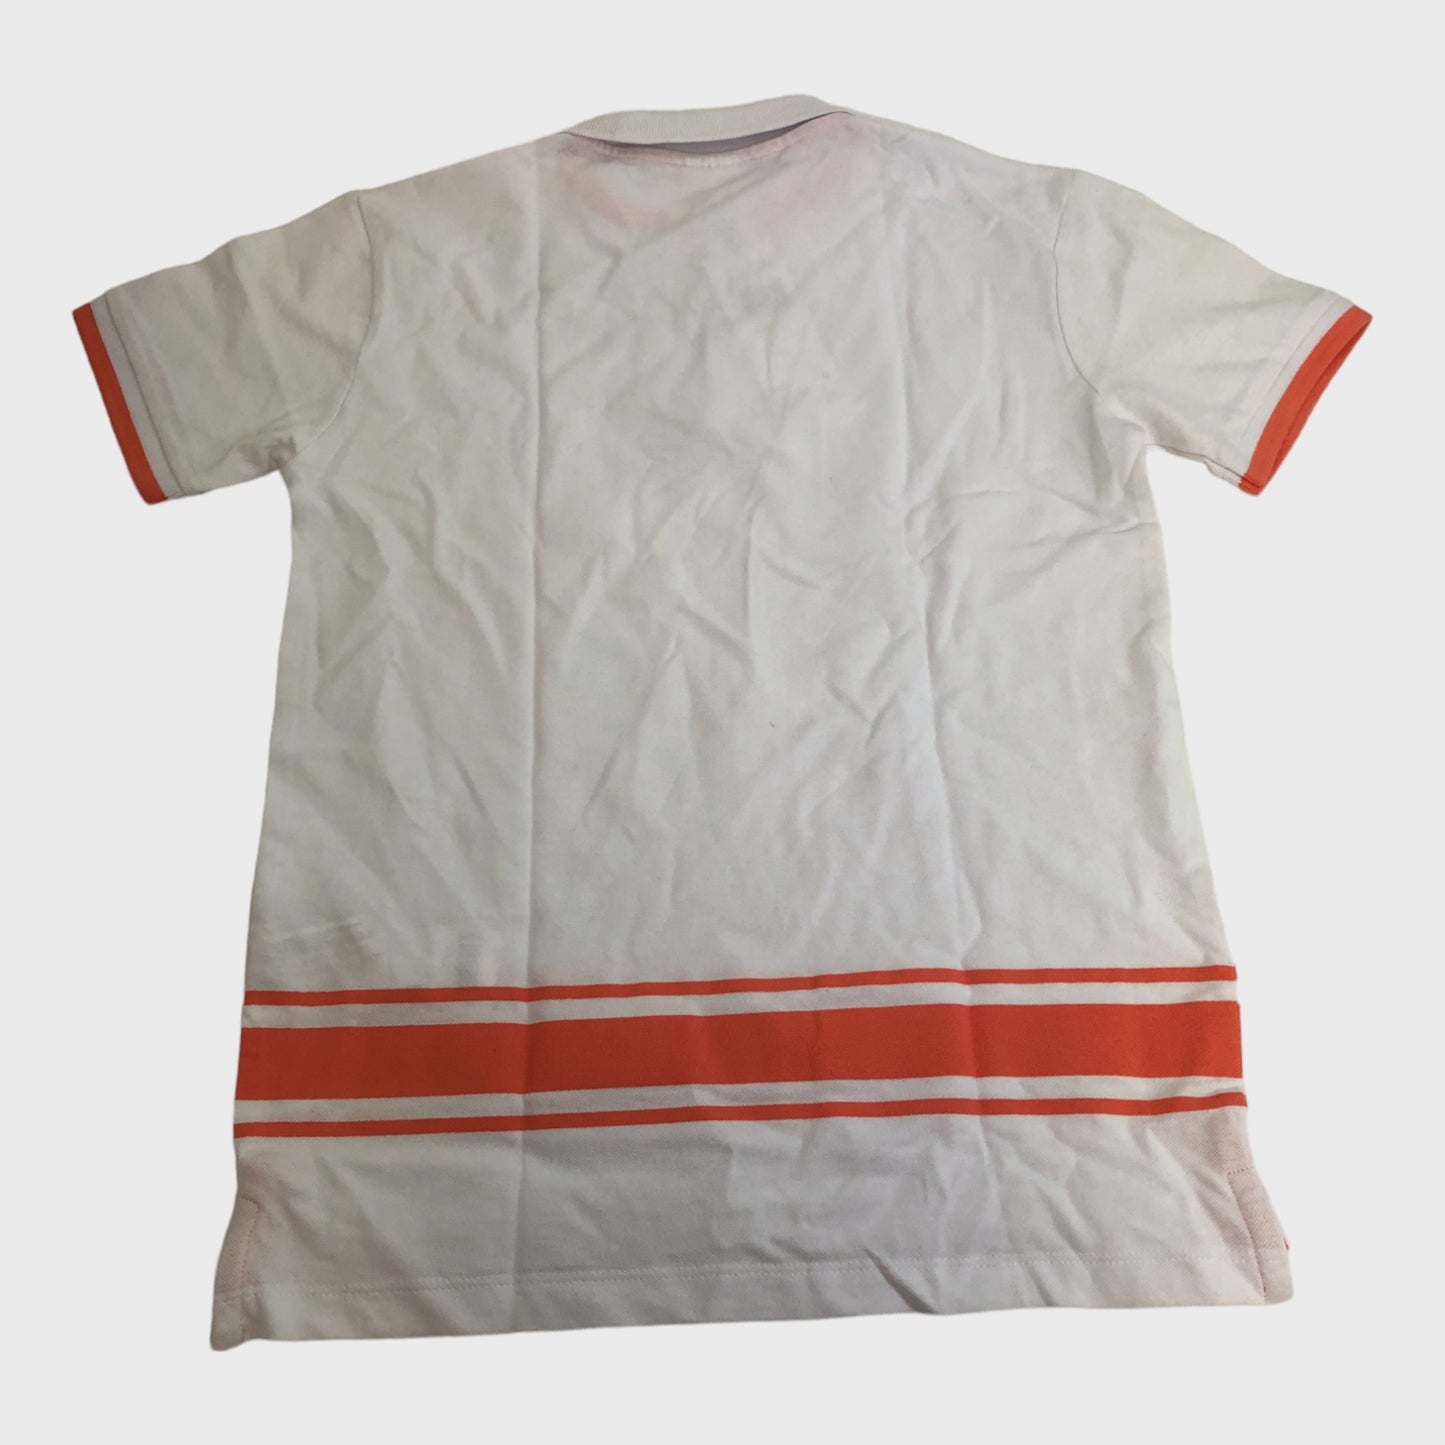 Kid's White & Orange Polo Shirt